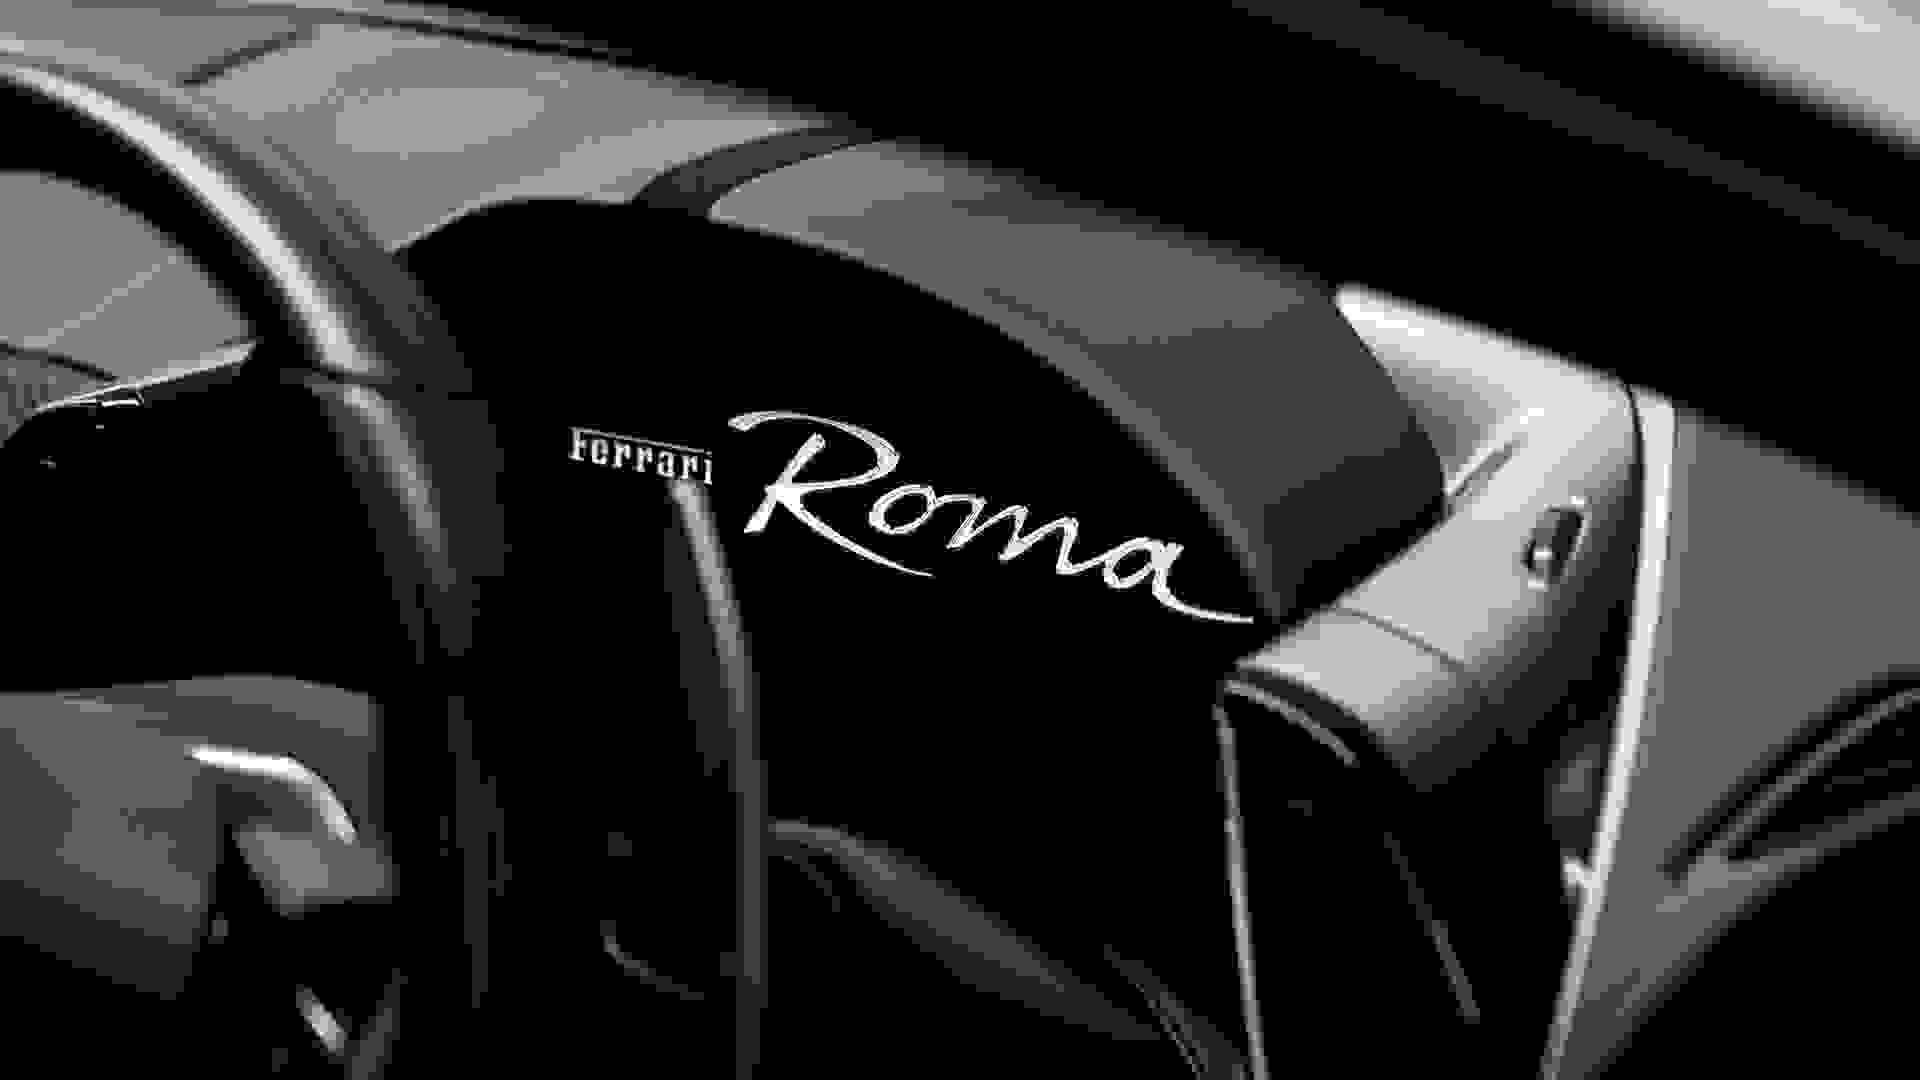 Ferrari ROMA Photo 6055ecbe-b76a-4d26-acc6-f9dd10c135f9.jpg